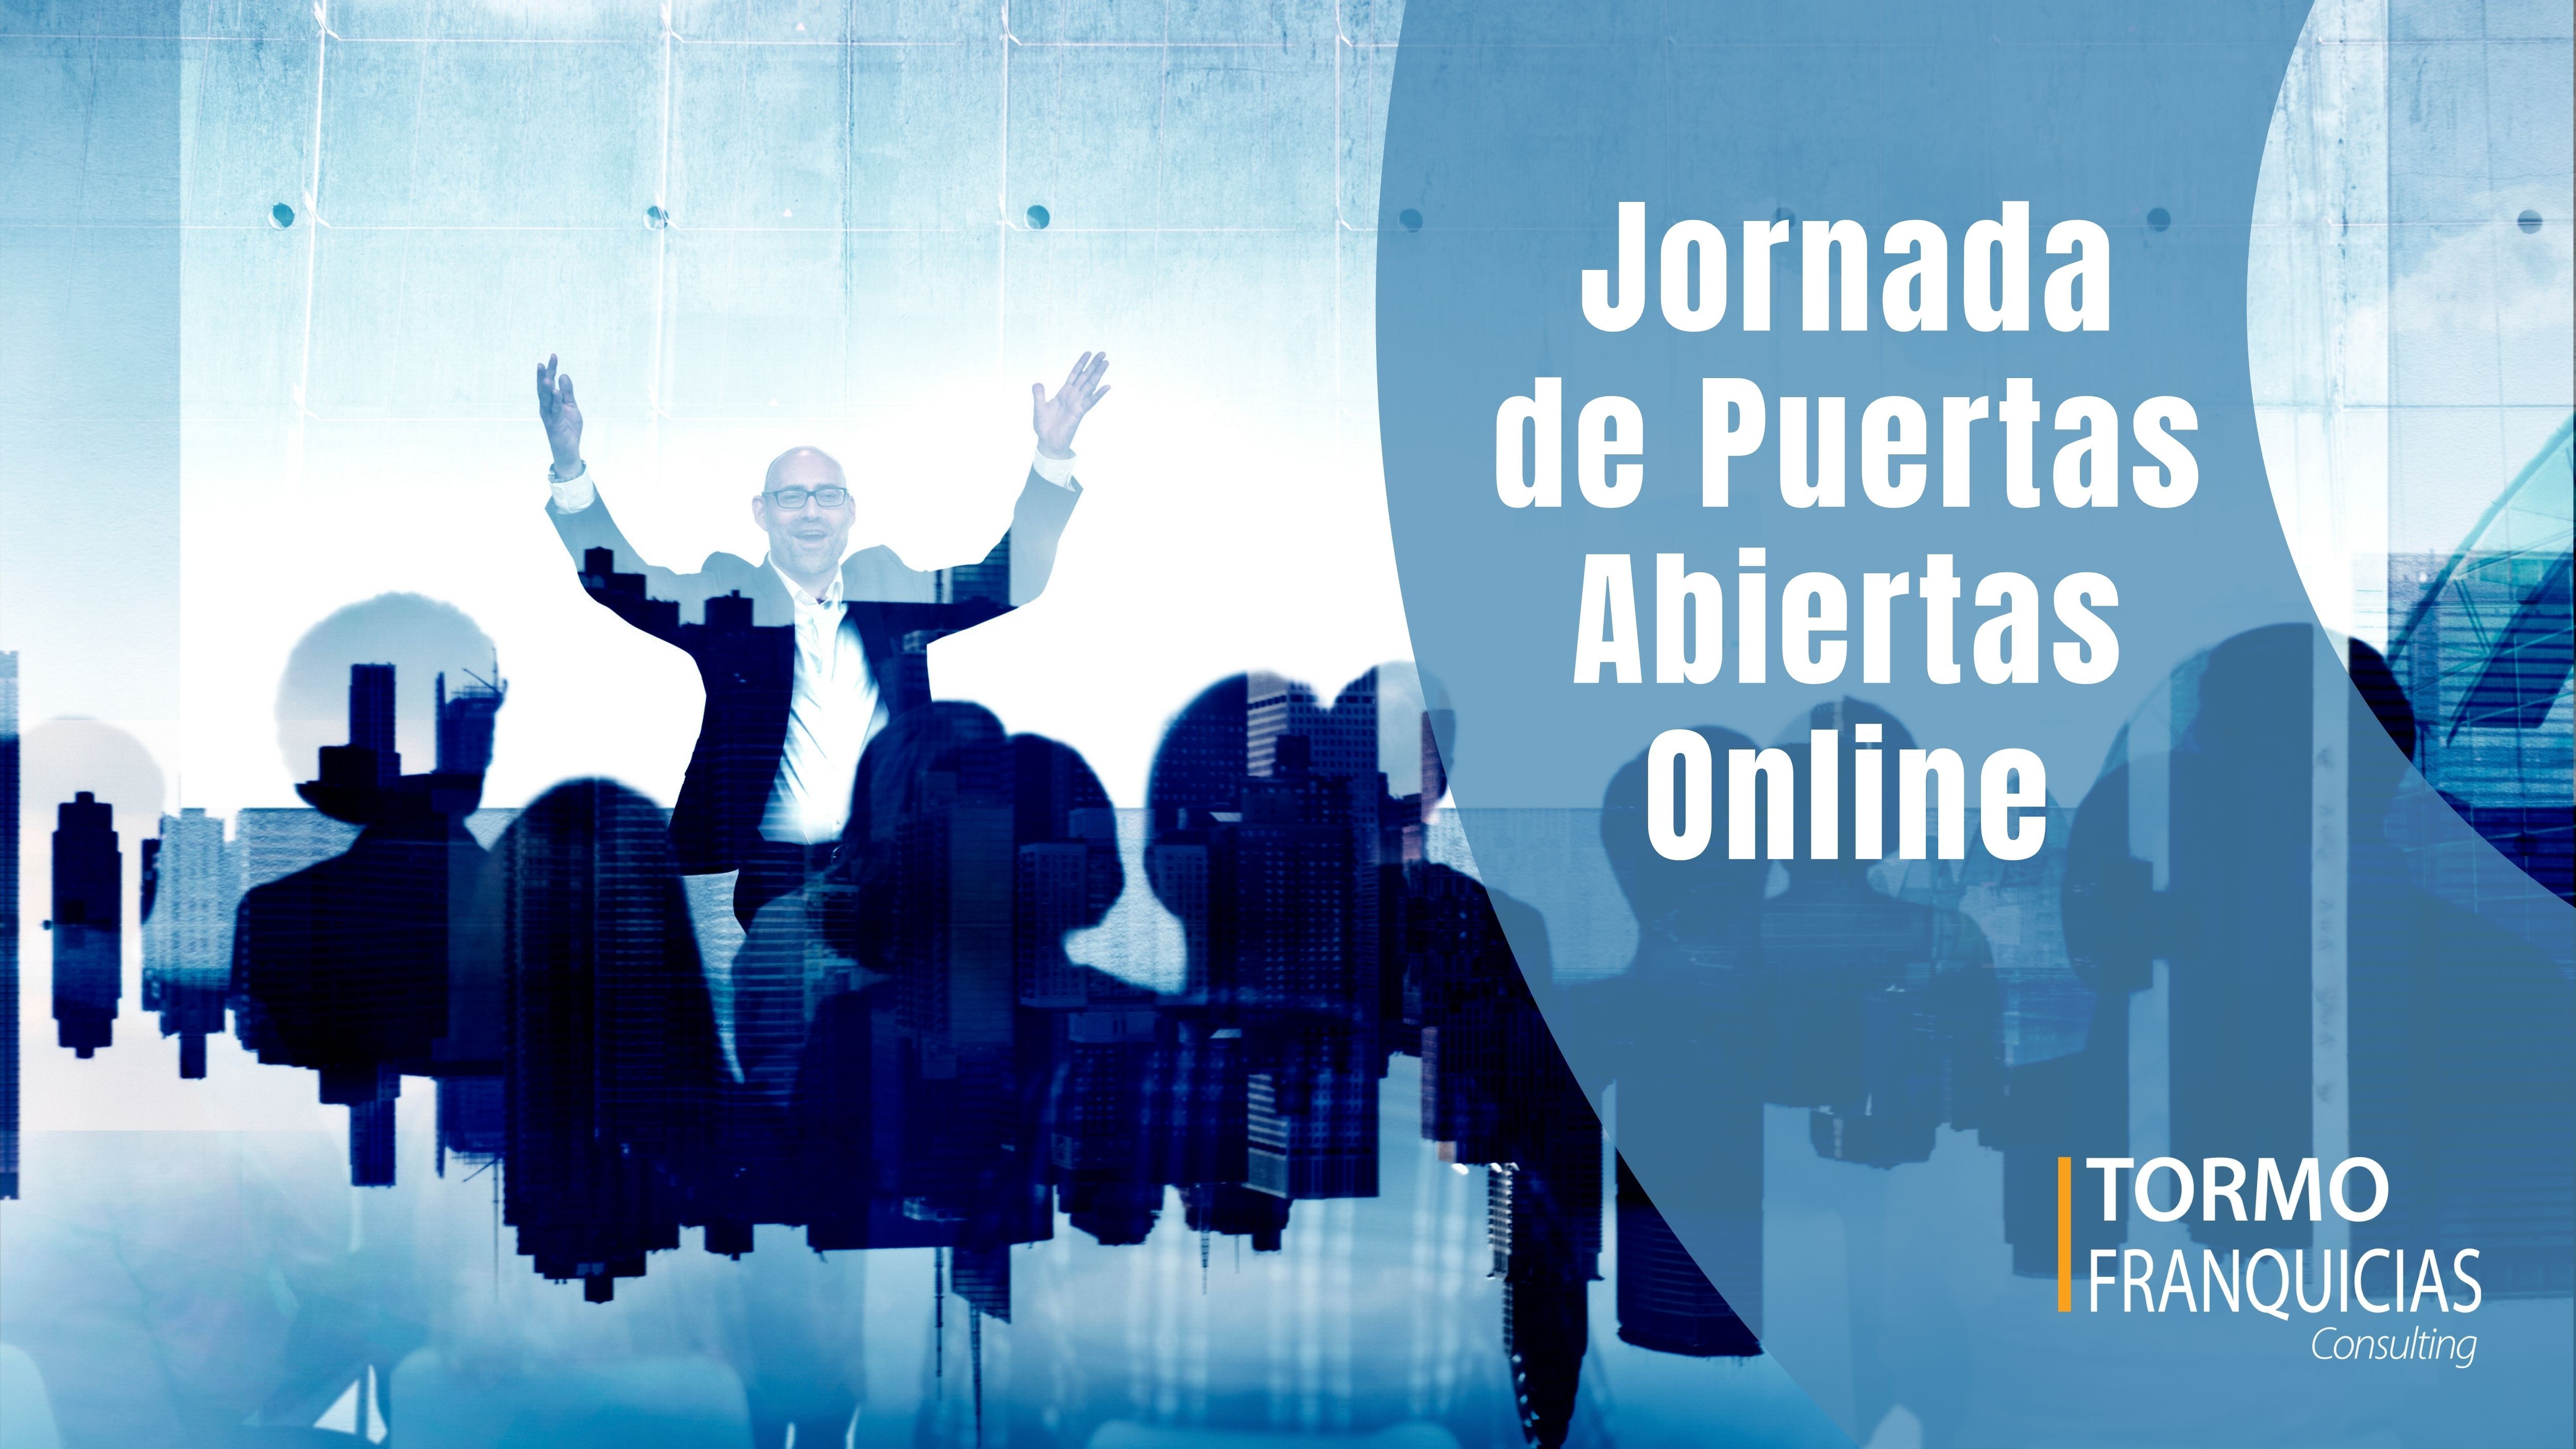 Tormo Franquicias Consulting organiza sus primeras Jornadas de Puertas Abiertas Online